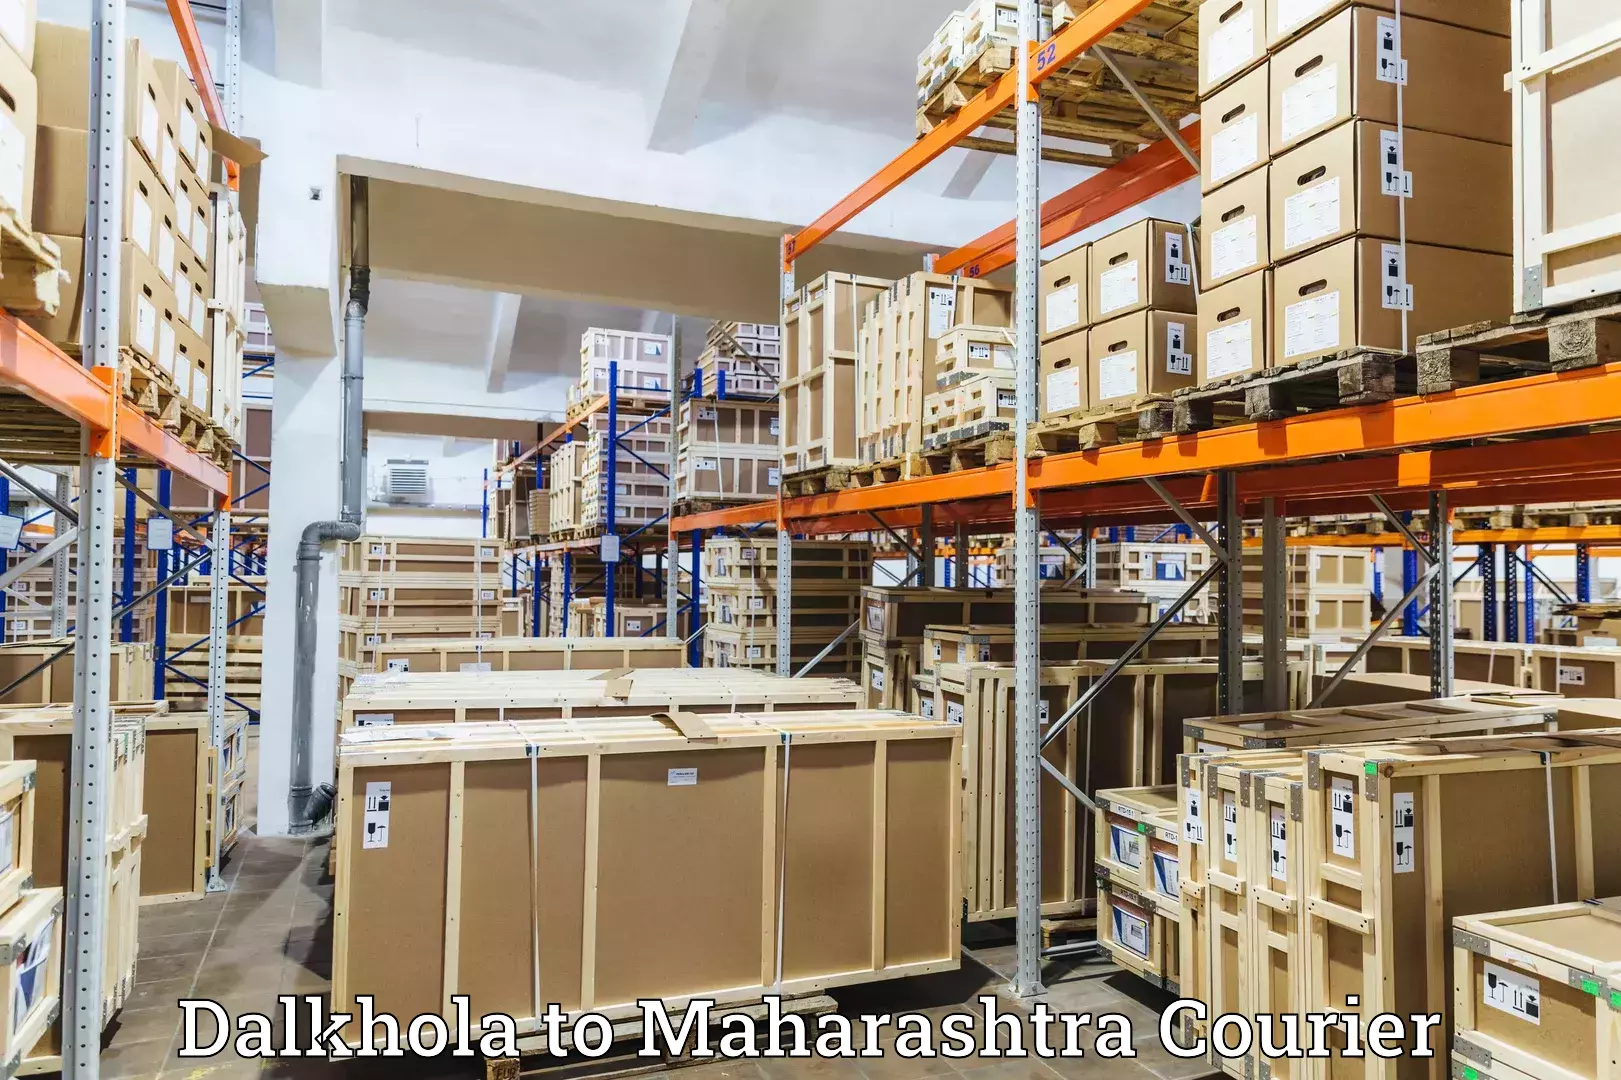 High-capacity parcel service Dalkhola to Mahabaleshwar